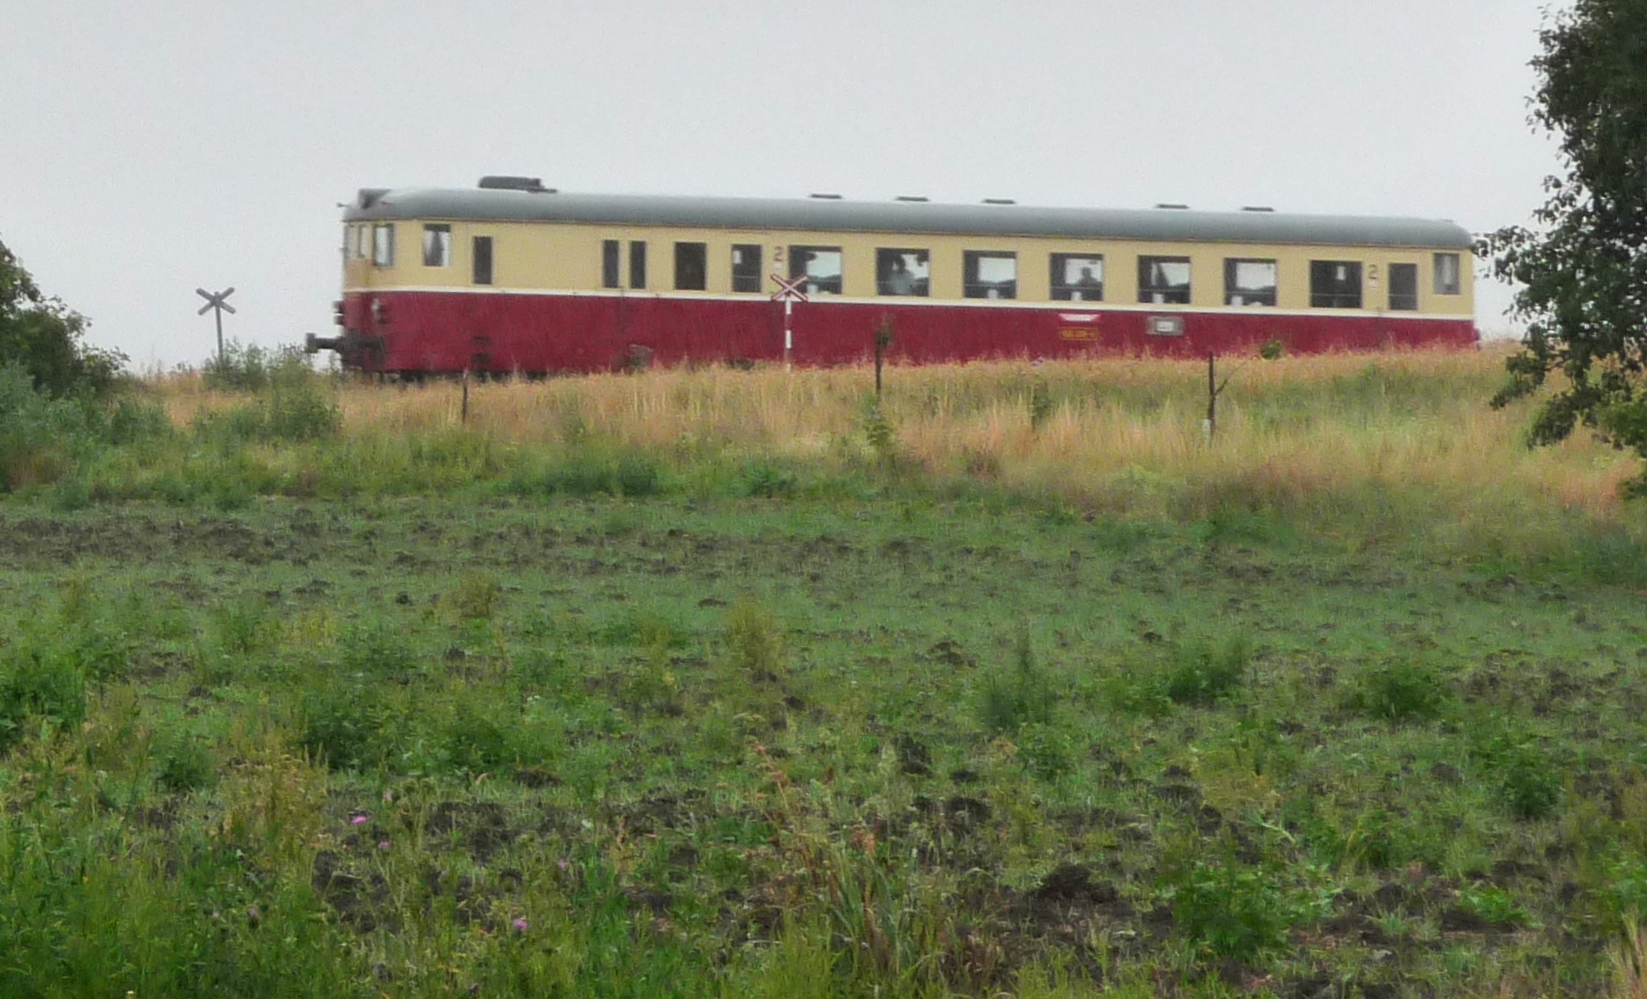 Historische trein.